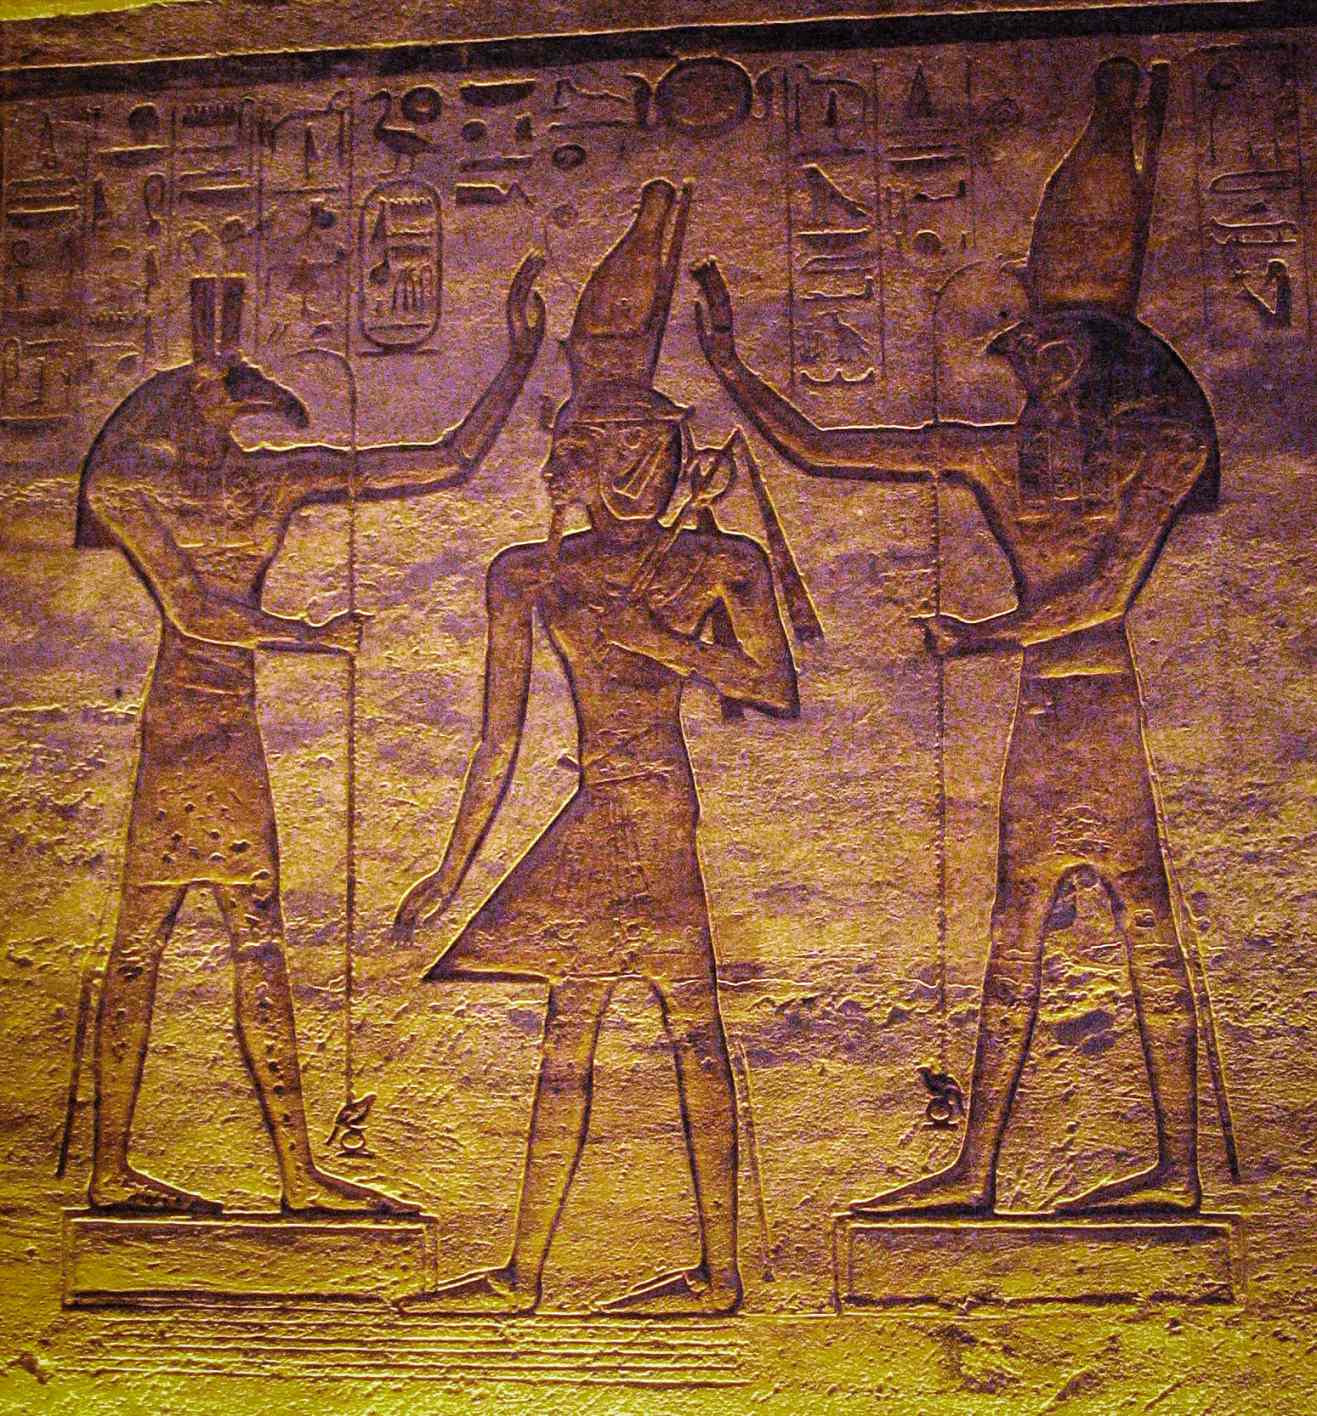 Set (Seth) và Horus yêu mến Ramesses. Nghiên cứu hiện tại cho thấy mặt trăng có thể được đại diện bởi Seth và ngôi sao biến hình Algol bởi Horus trong Lịch Cairo.